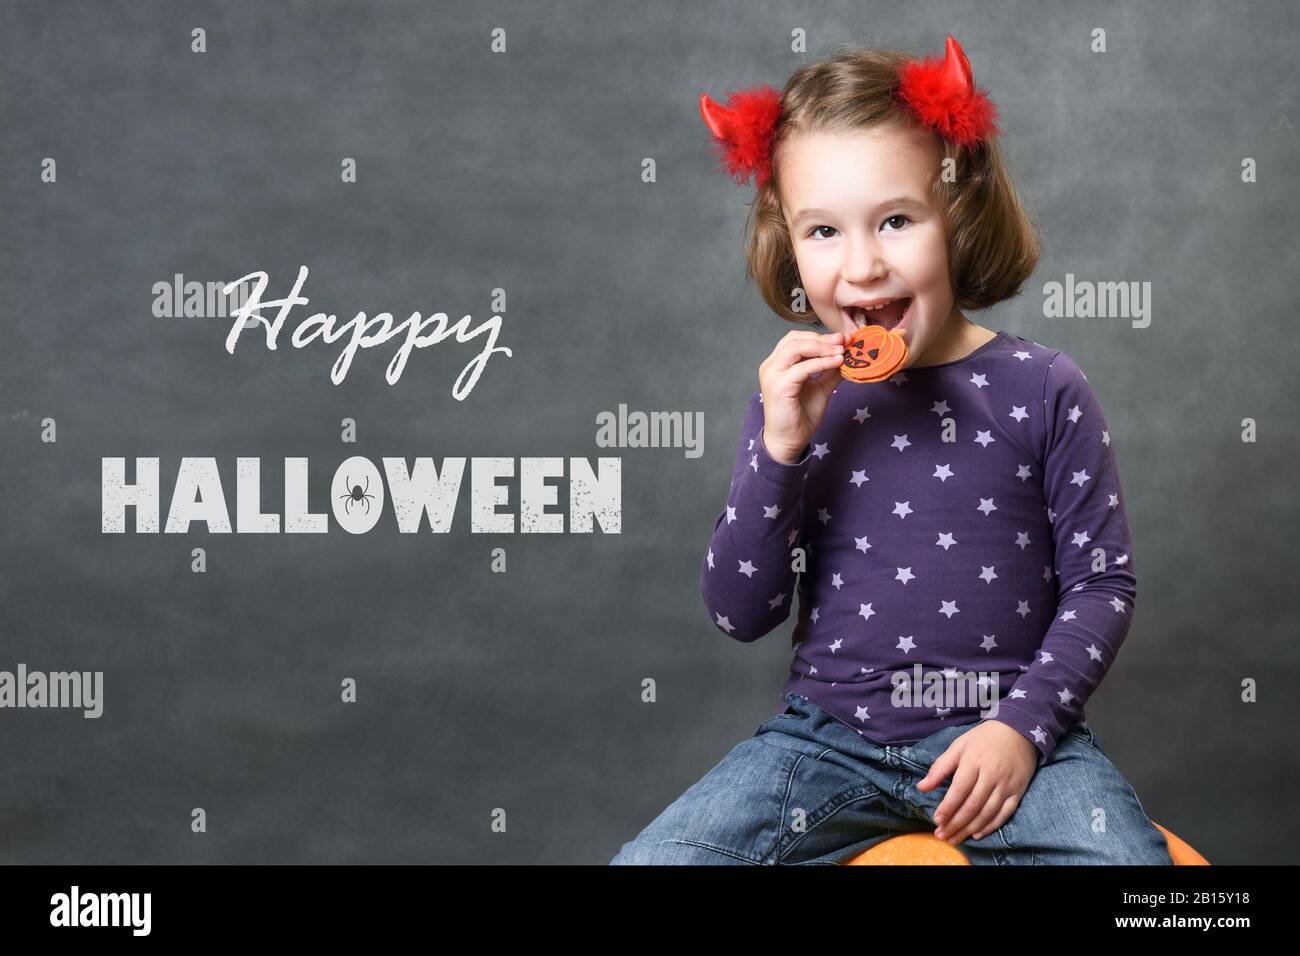 Bonne Fête D'Halloween ! Petite fille avec cornes de costume s'amuser. Adorable enfant avec typographie d'Halloween. Les petits sourires mignons et les friandises d'Halloween Banque D'Images